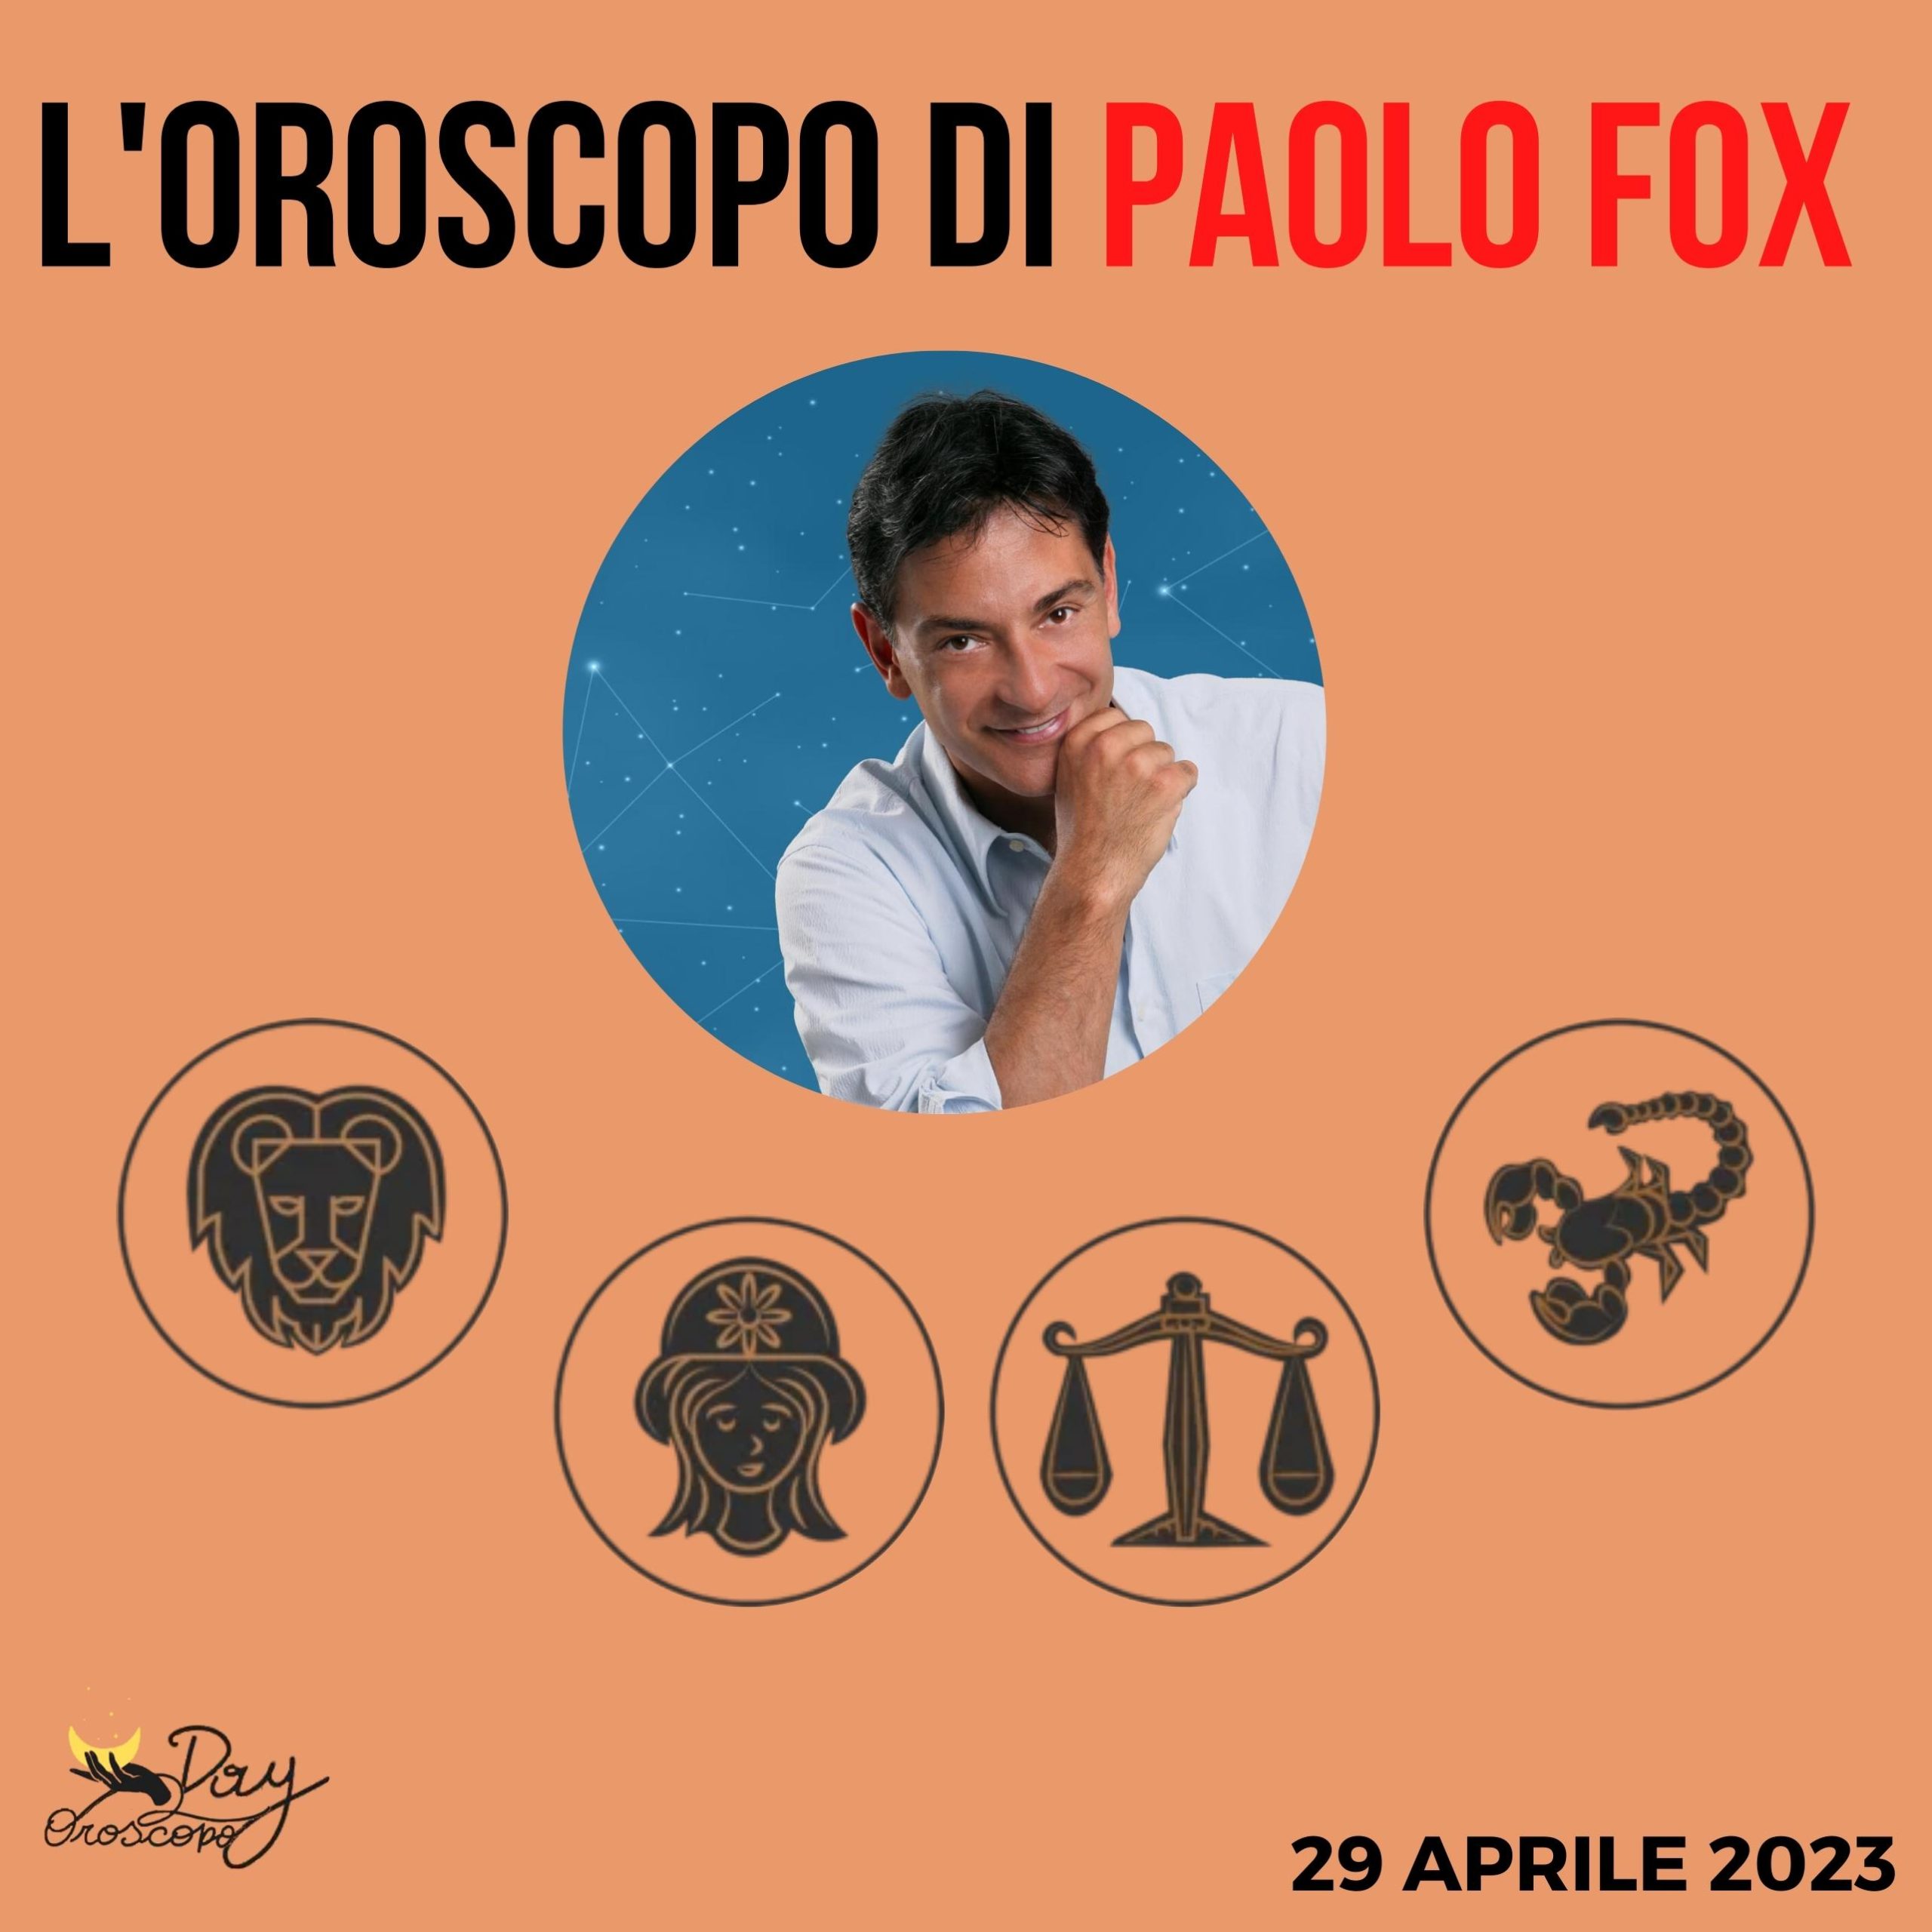 Oroscopo oggi domani Paolo Fox 29 aprile Leone Vergine Bilancia Scorpione